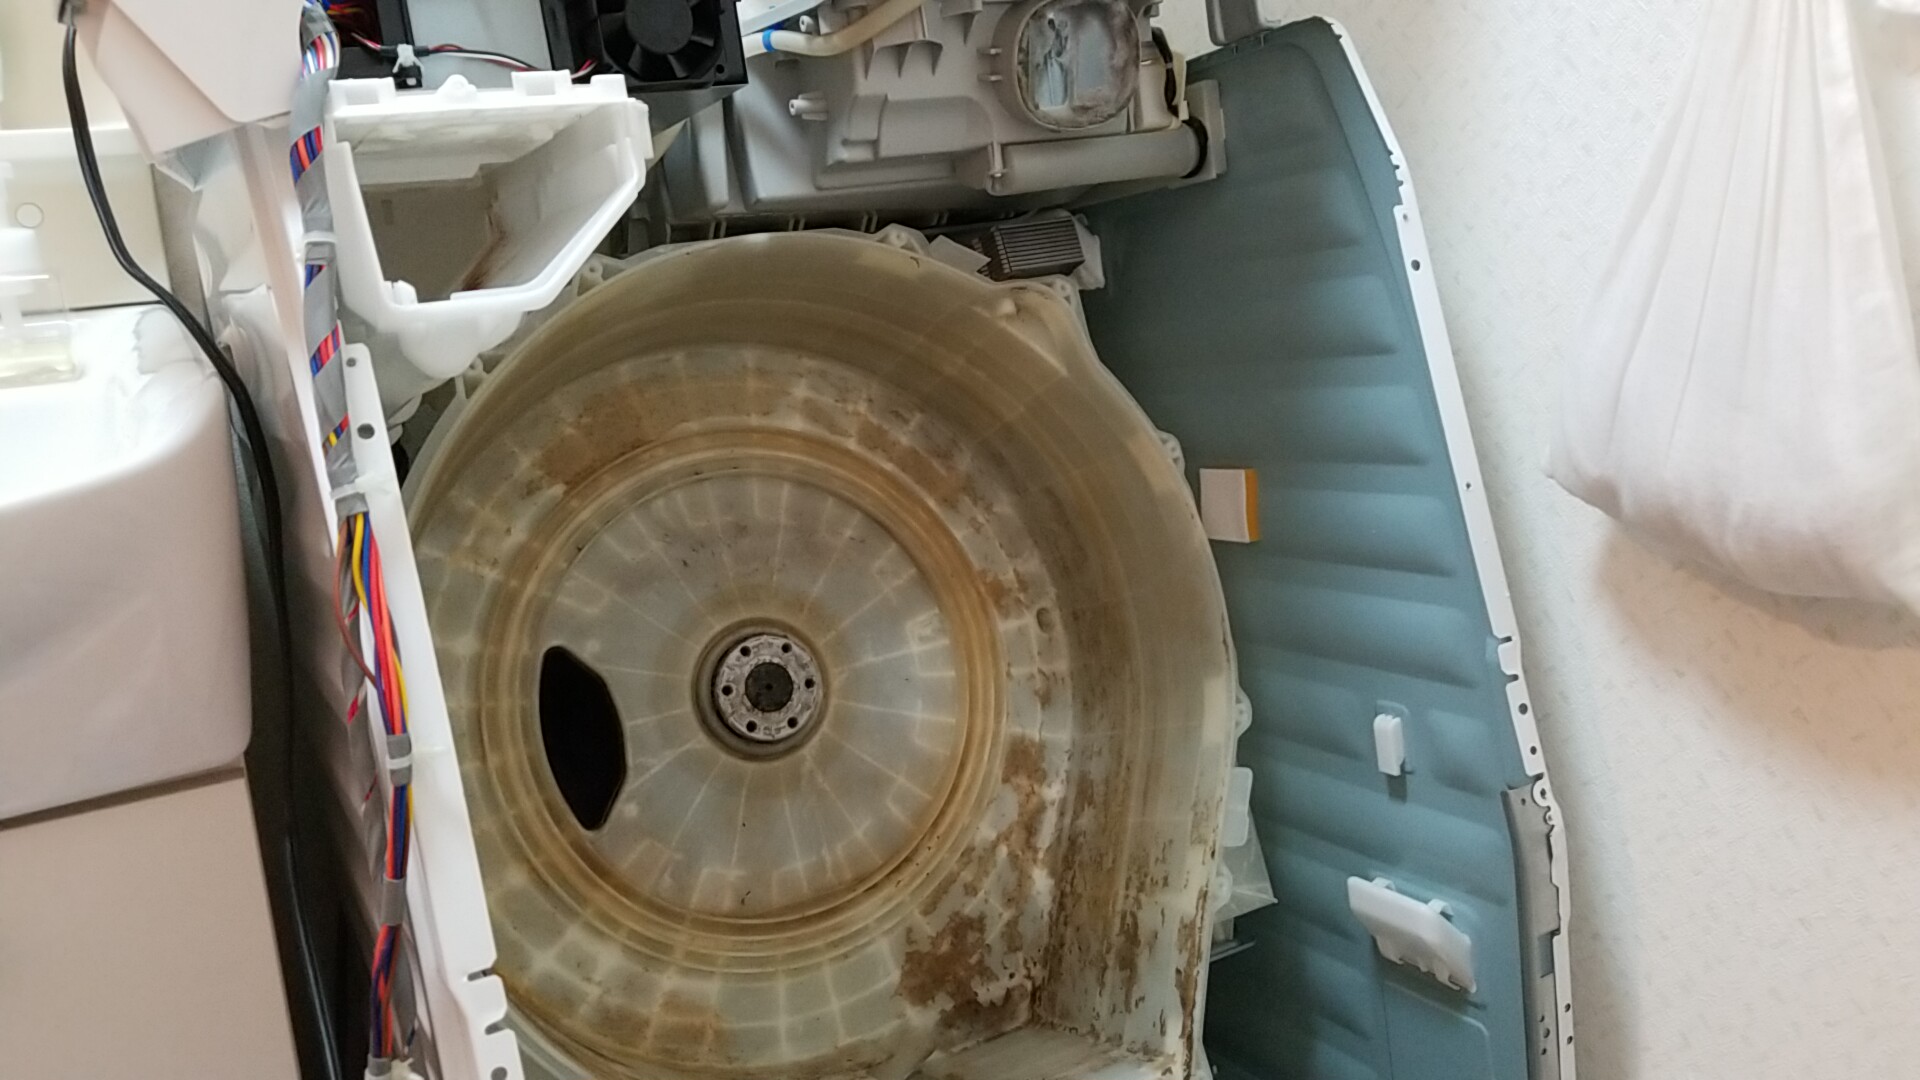 愛知県北名古屋市 パナソニック製ドラム式洗濯機クリーニング同時乾燥系統清掃